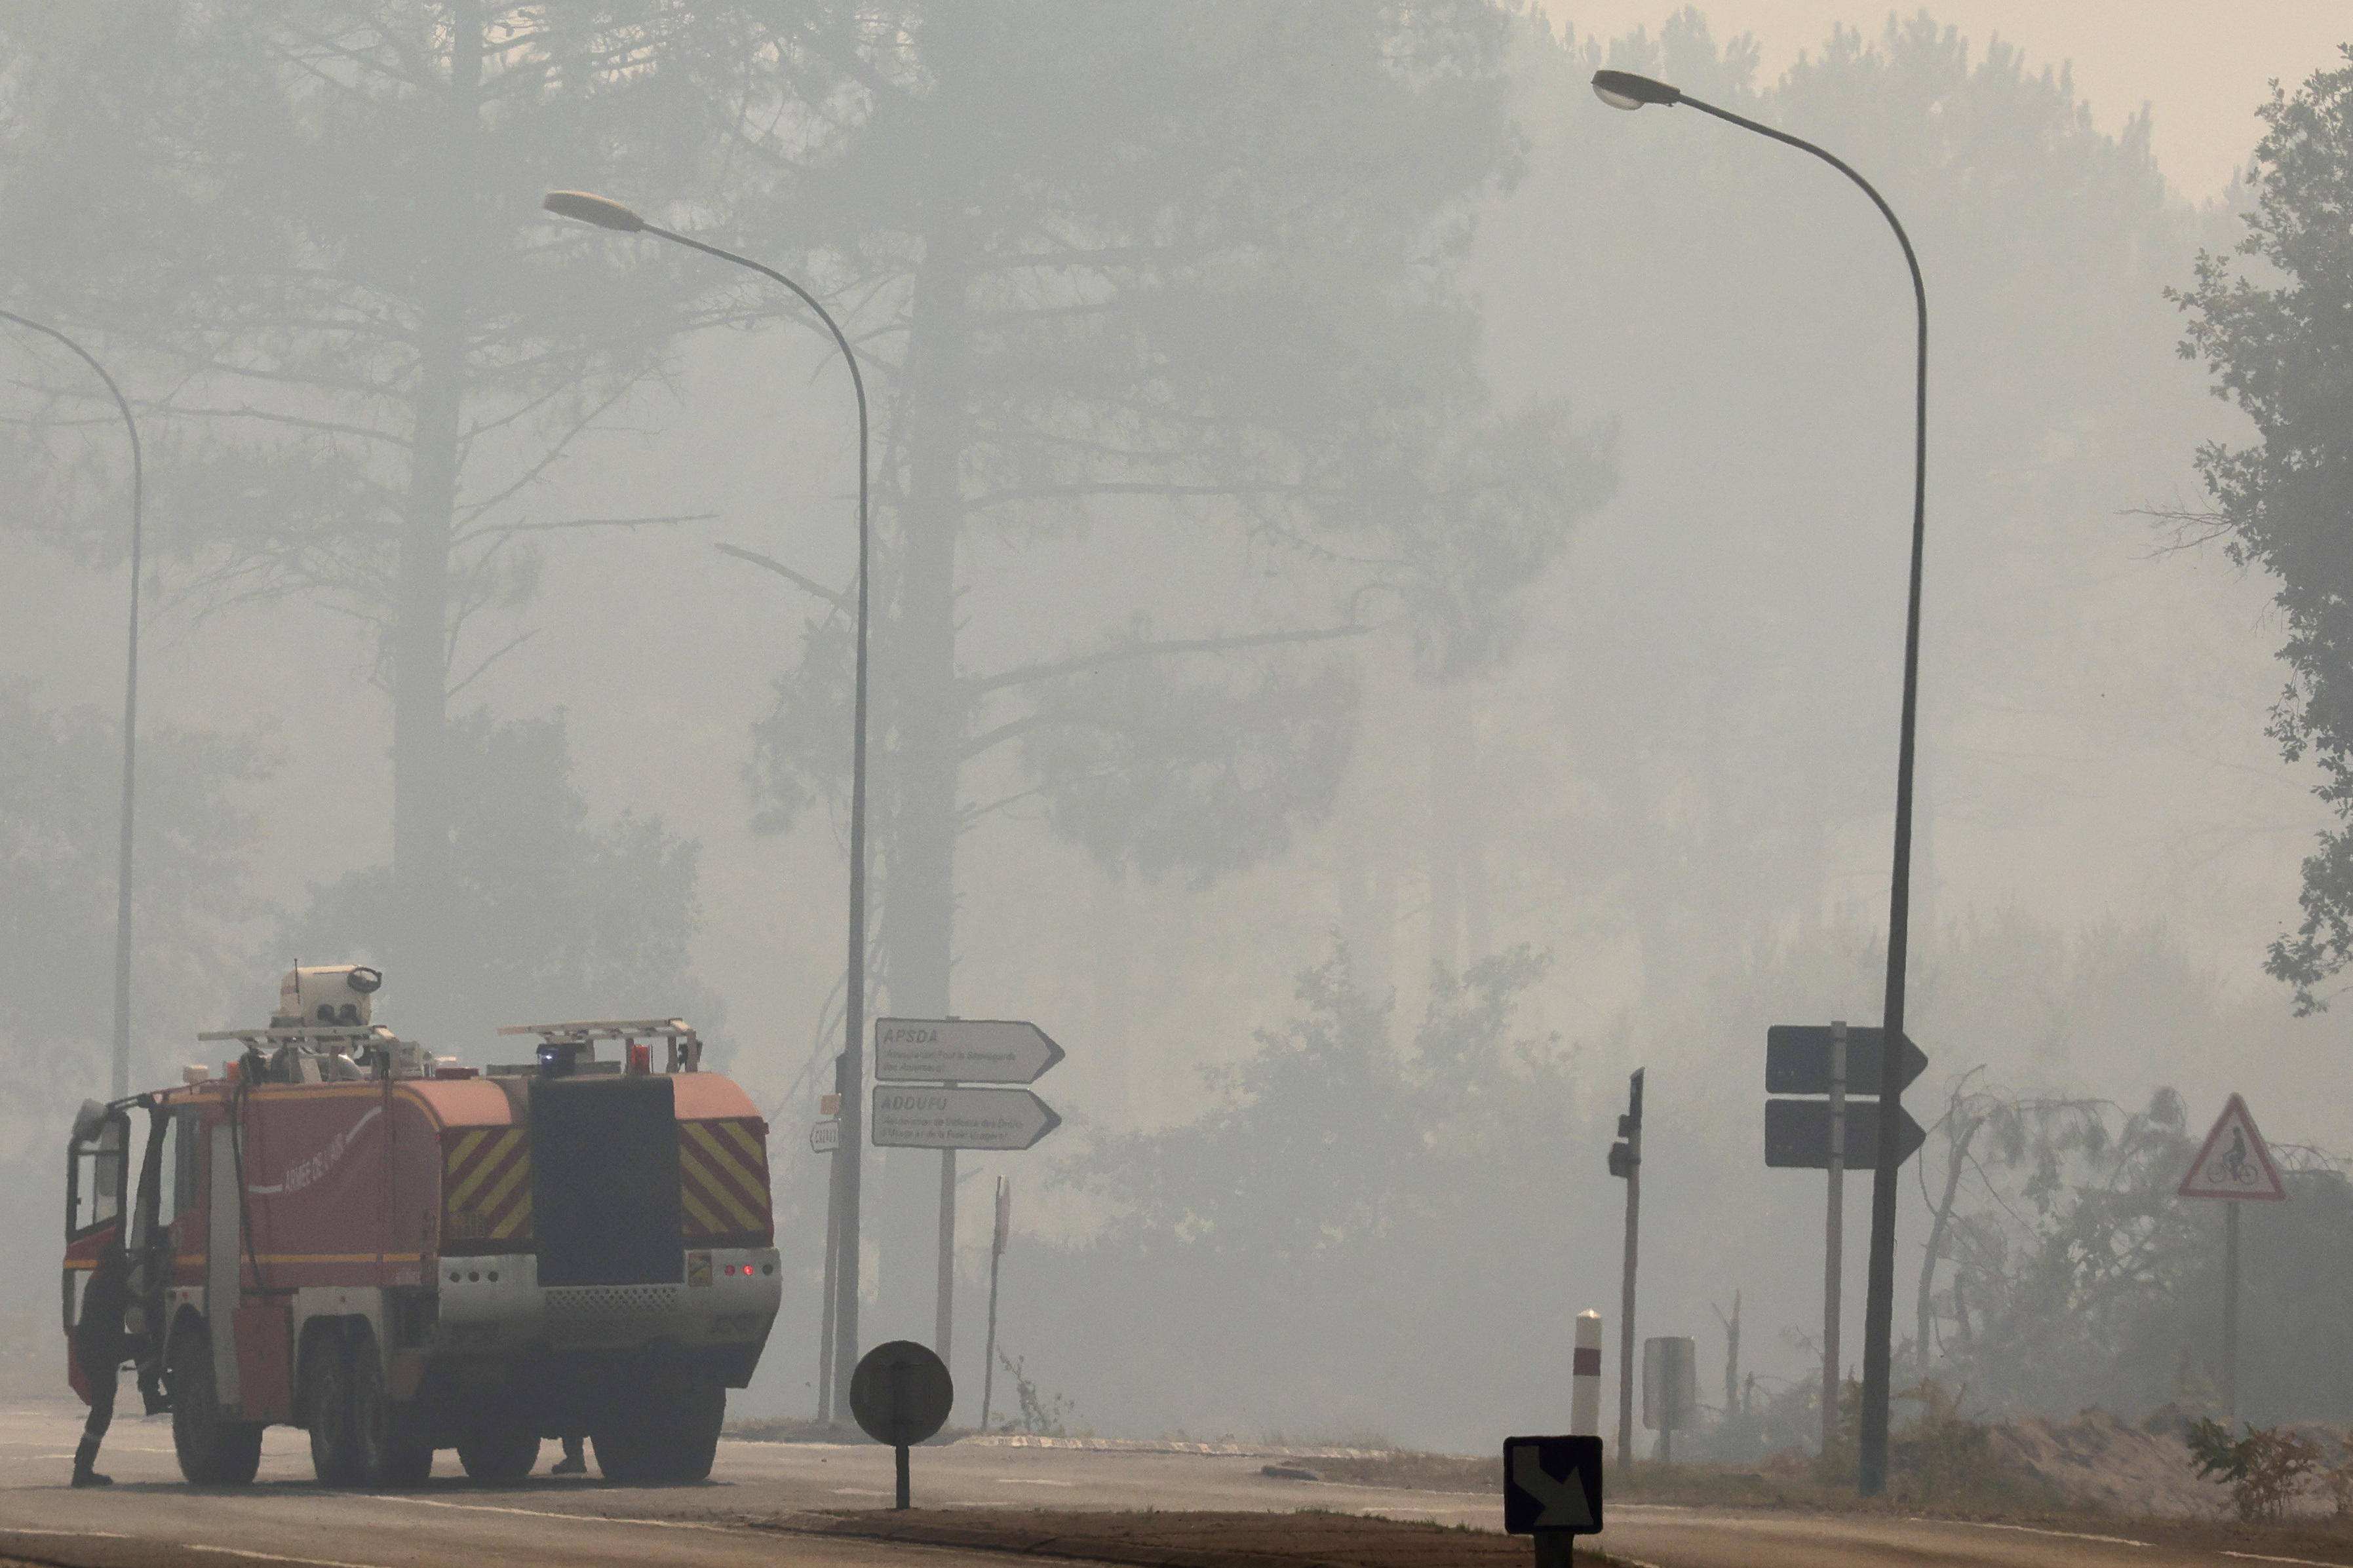 Gironde : les entreprises endommagées par les incendies pourront bénéficier du chômage partiel longue durée, promet l'Etat